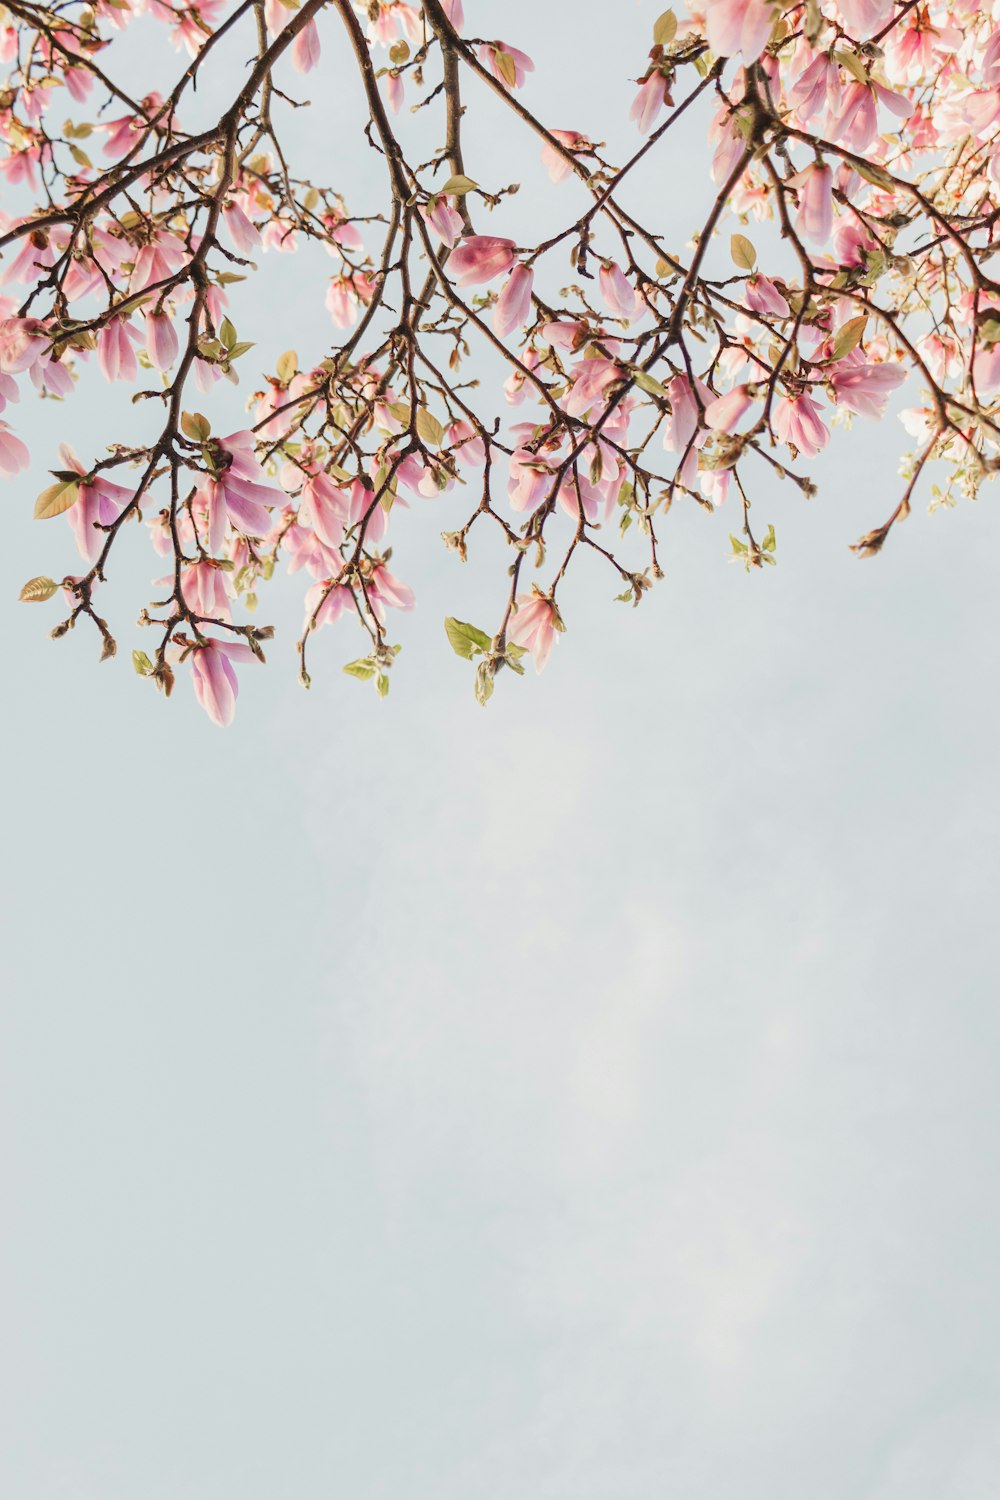 um galho de árvore com flores cor-de-rosa em primeiro plano